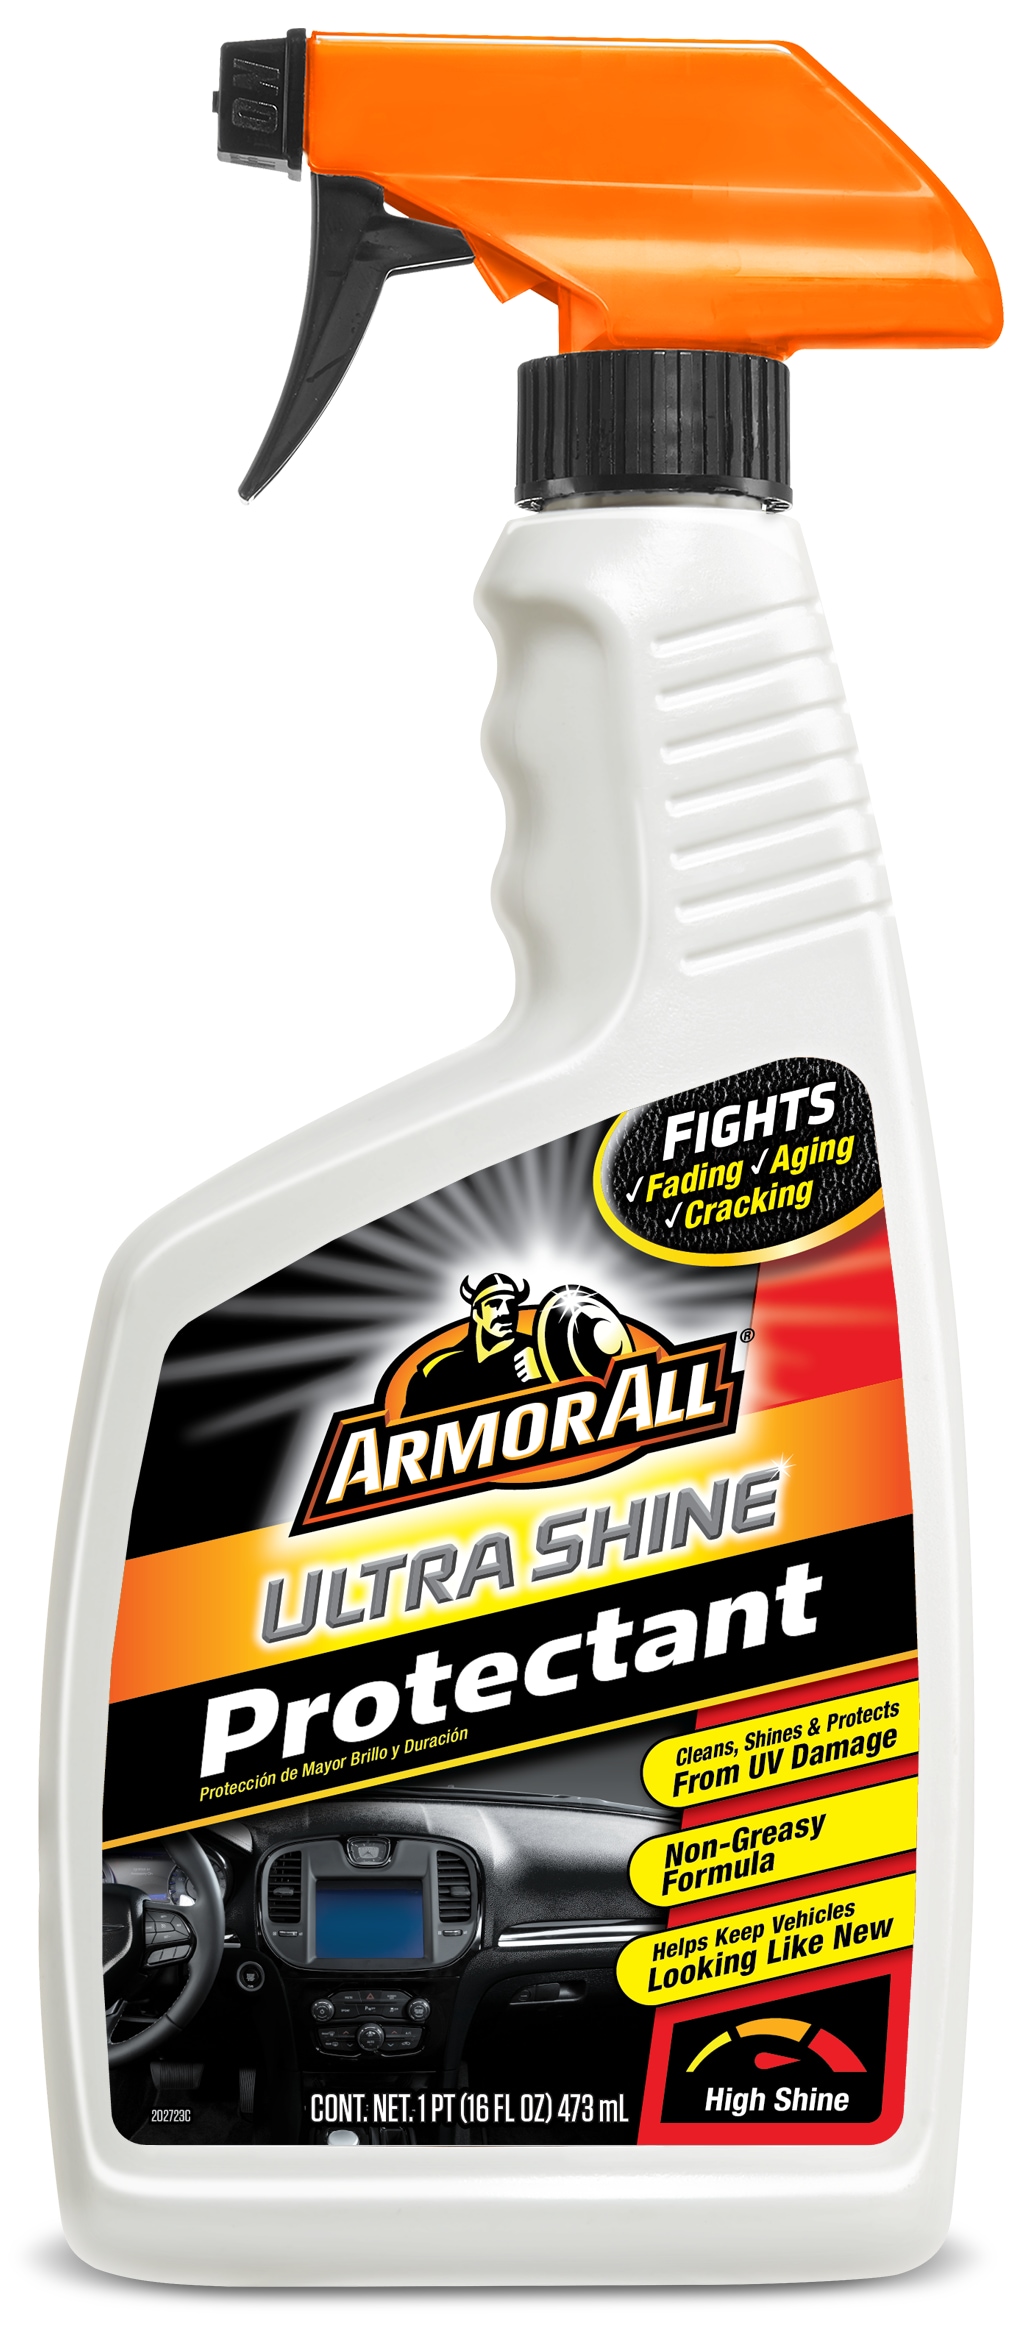 Armor All Pump Spray Original Protectant 10 oz - 12 Pack